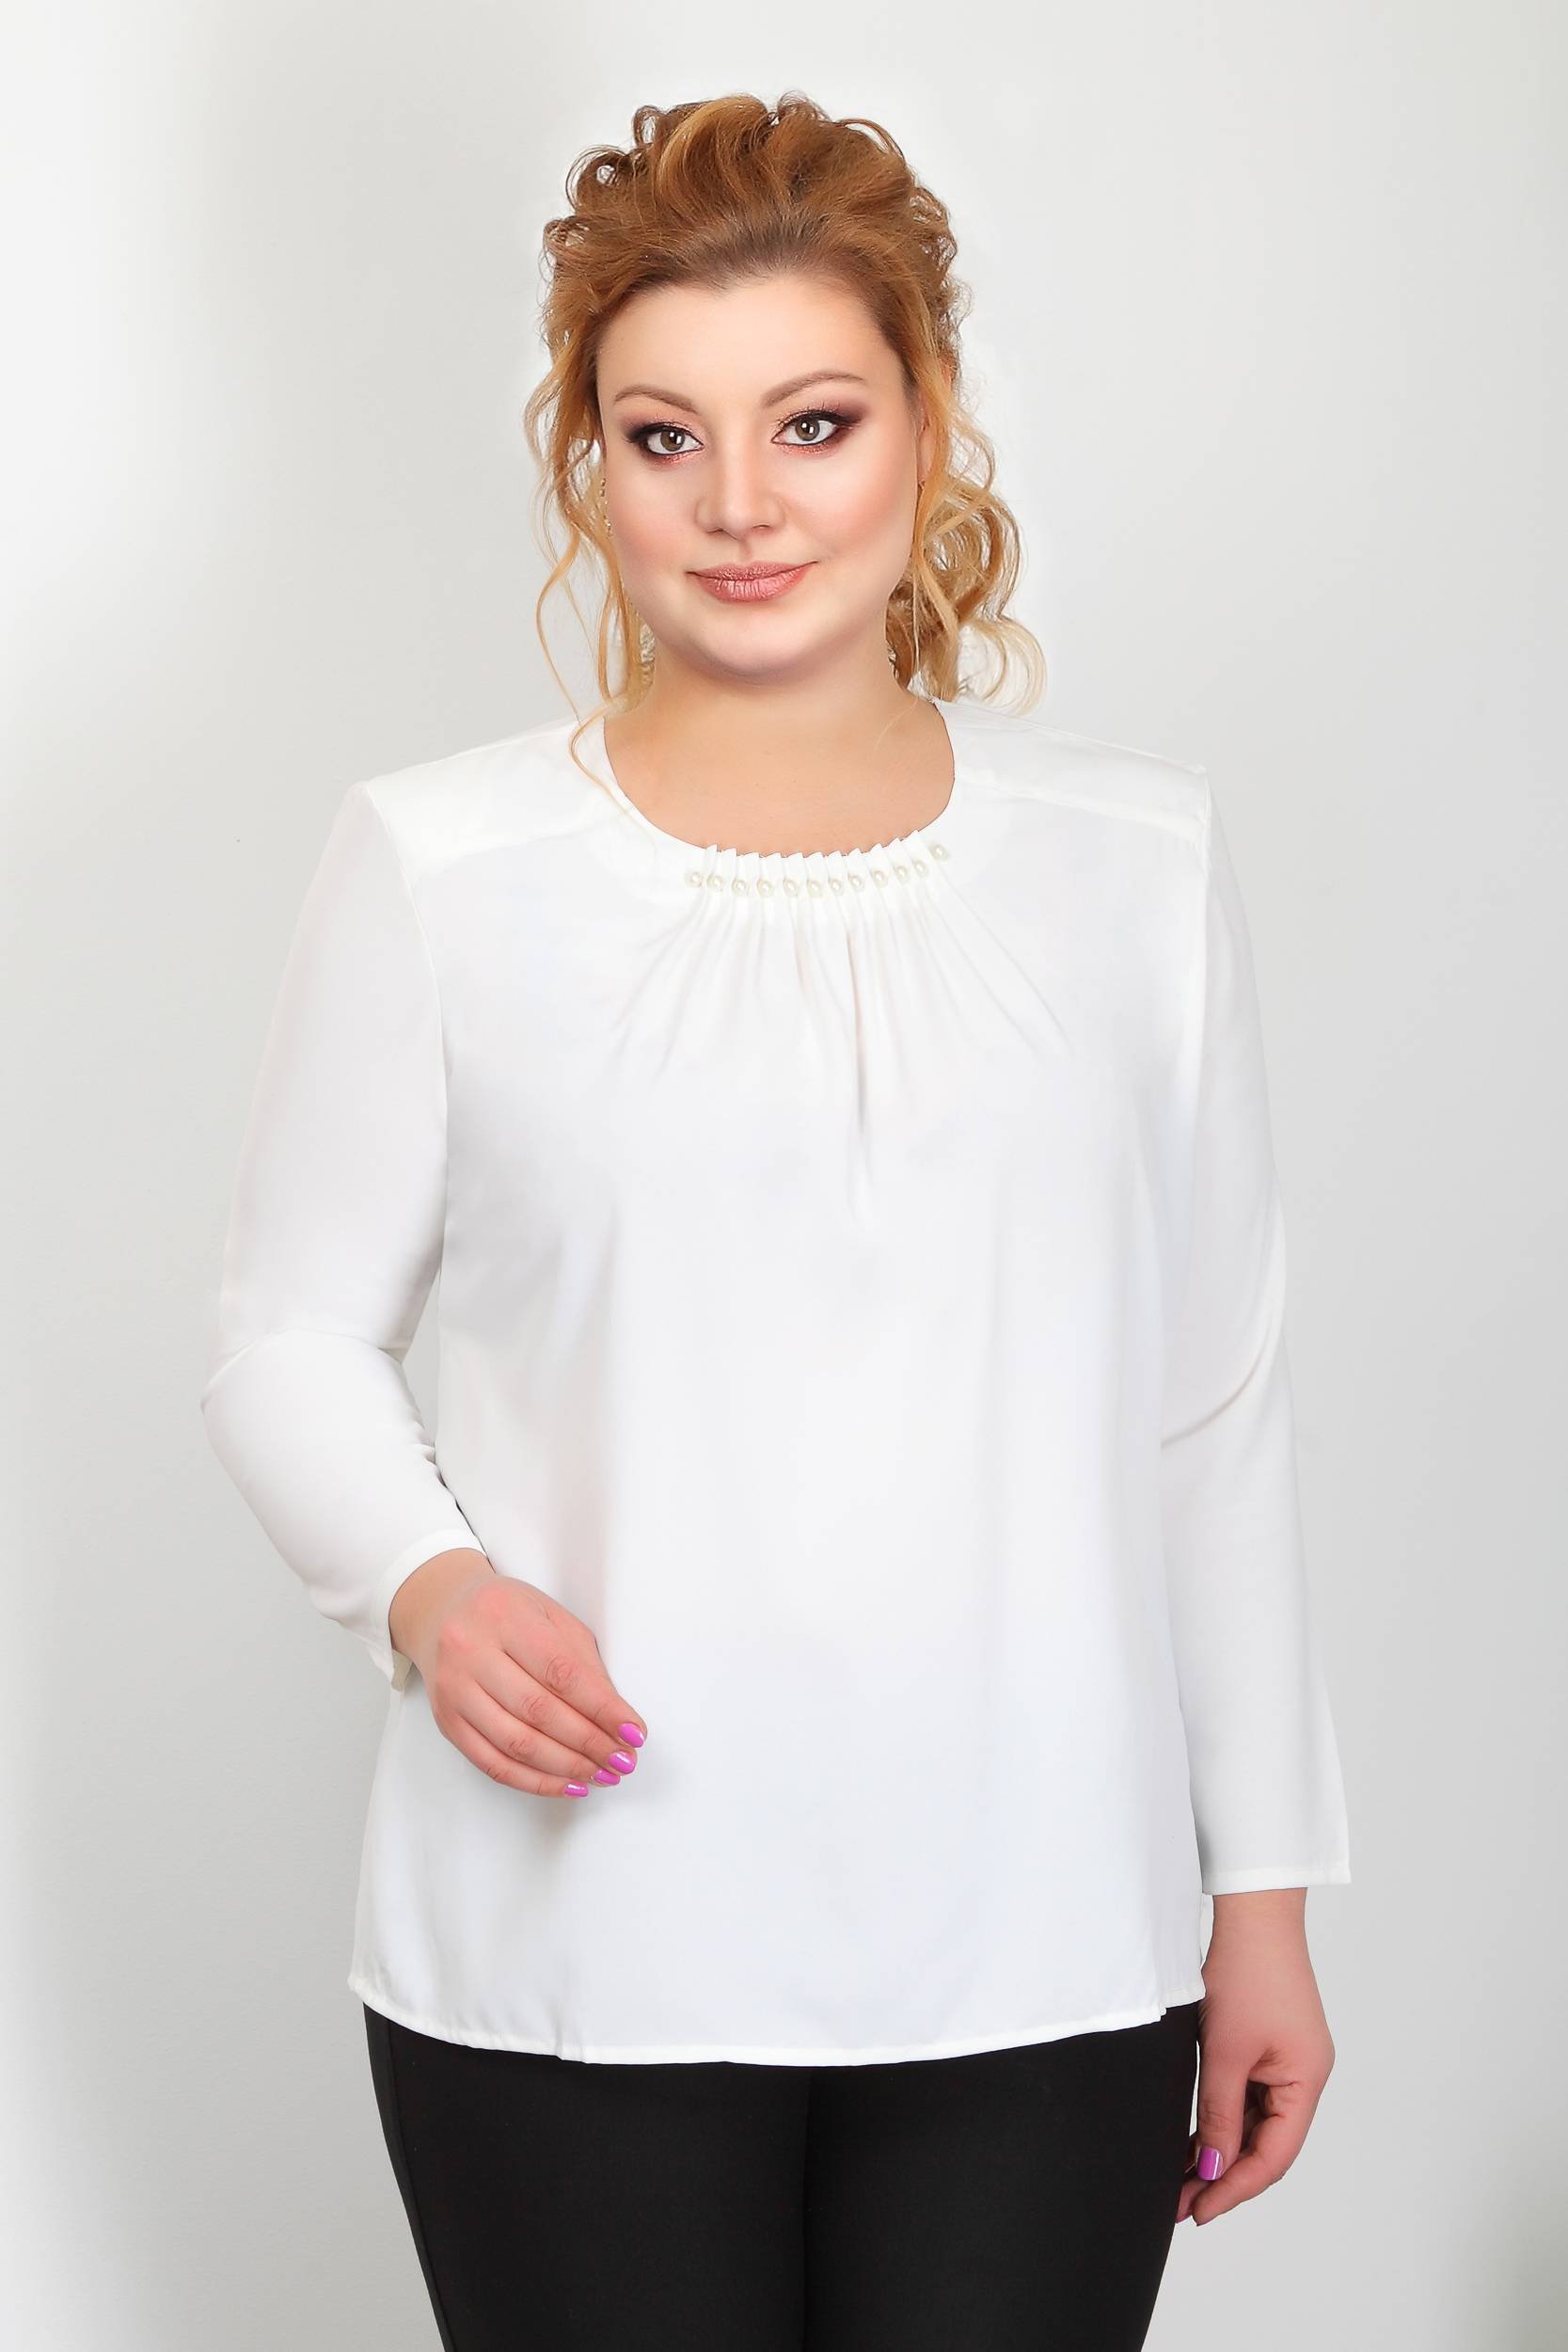 Купить блузку 54 размера. Белая блузка для полных женщин. Белые блузки для полных. Блузки больших размеров для полных женщин. Офисные блузки для полных.